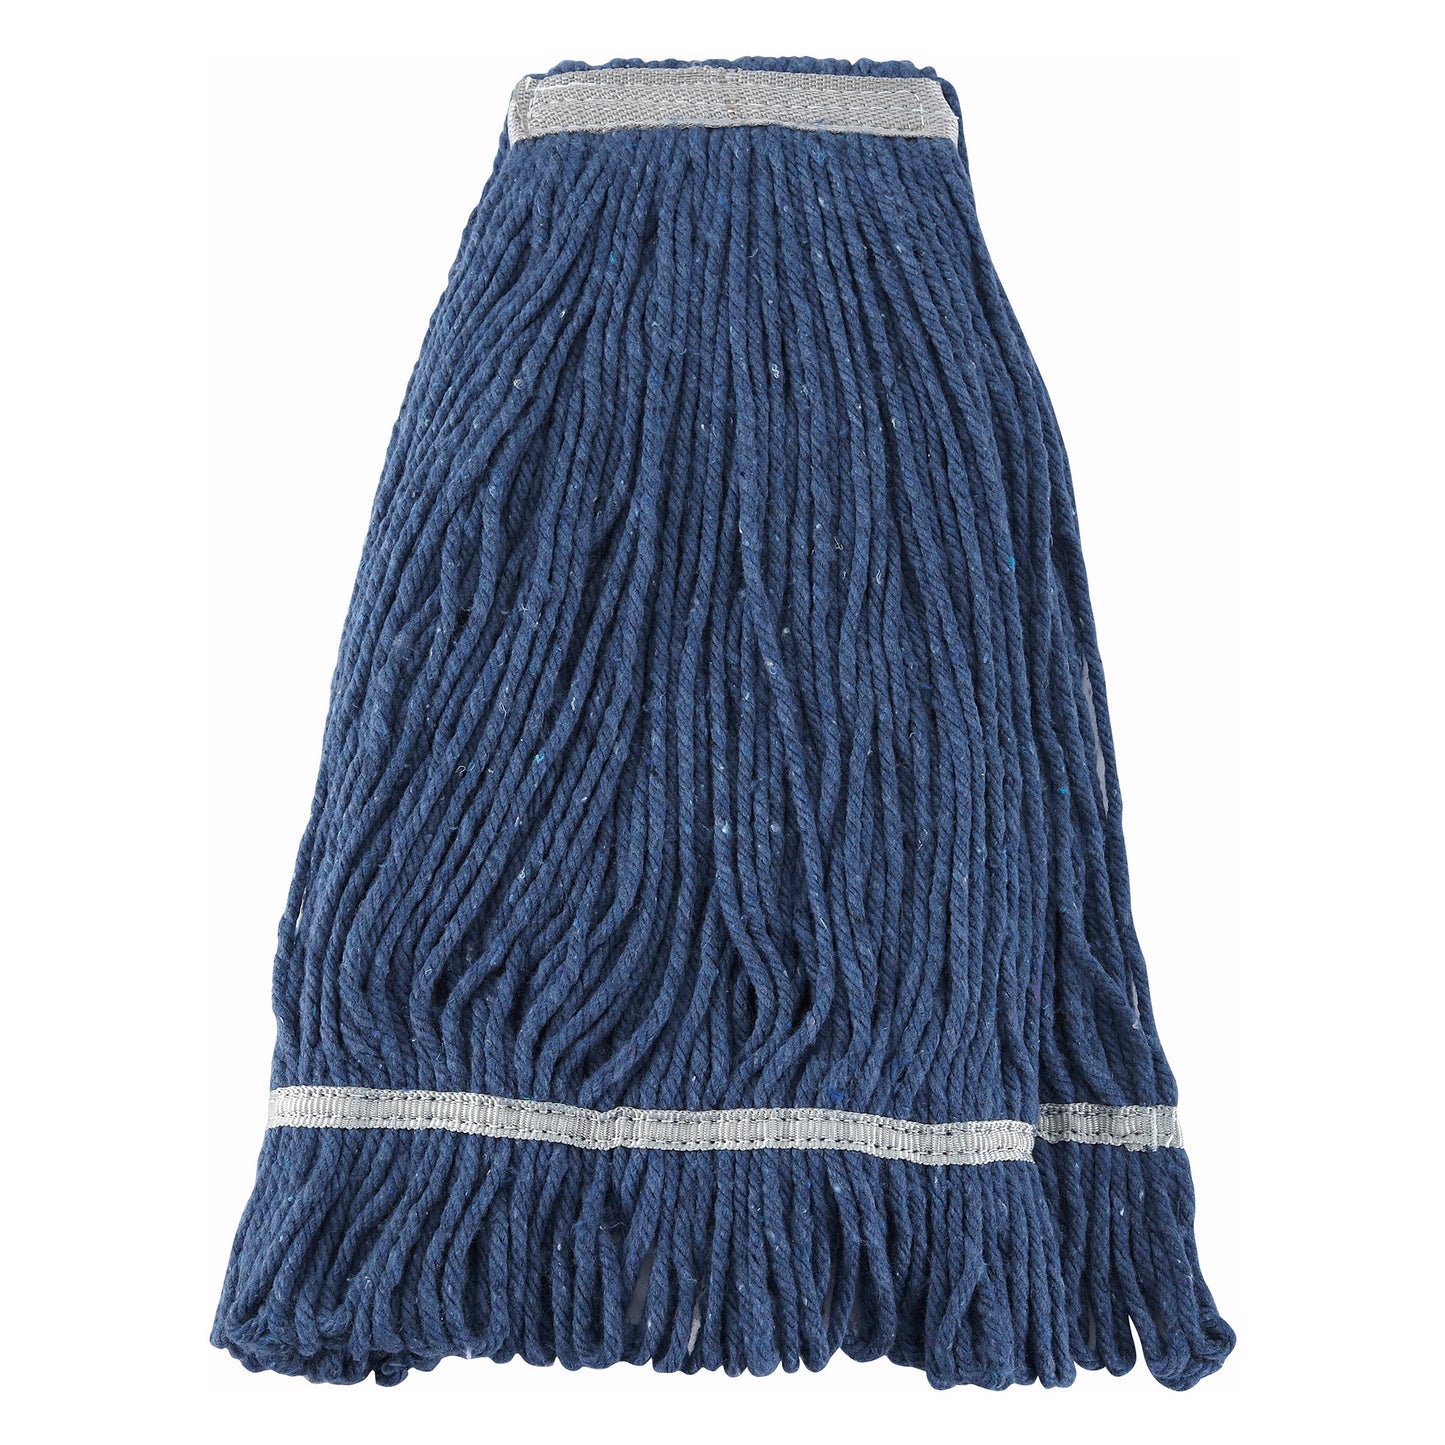 Premium Cotton-Poly Blend Looped End Wet Mop Head - Blue - 24oz/600g